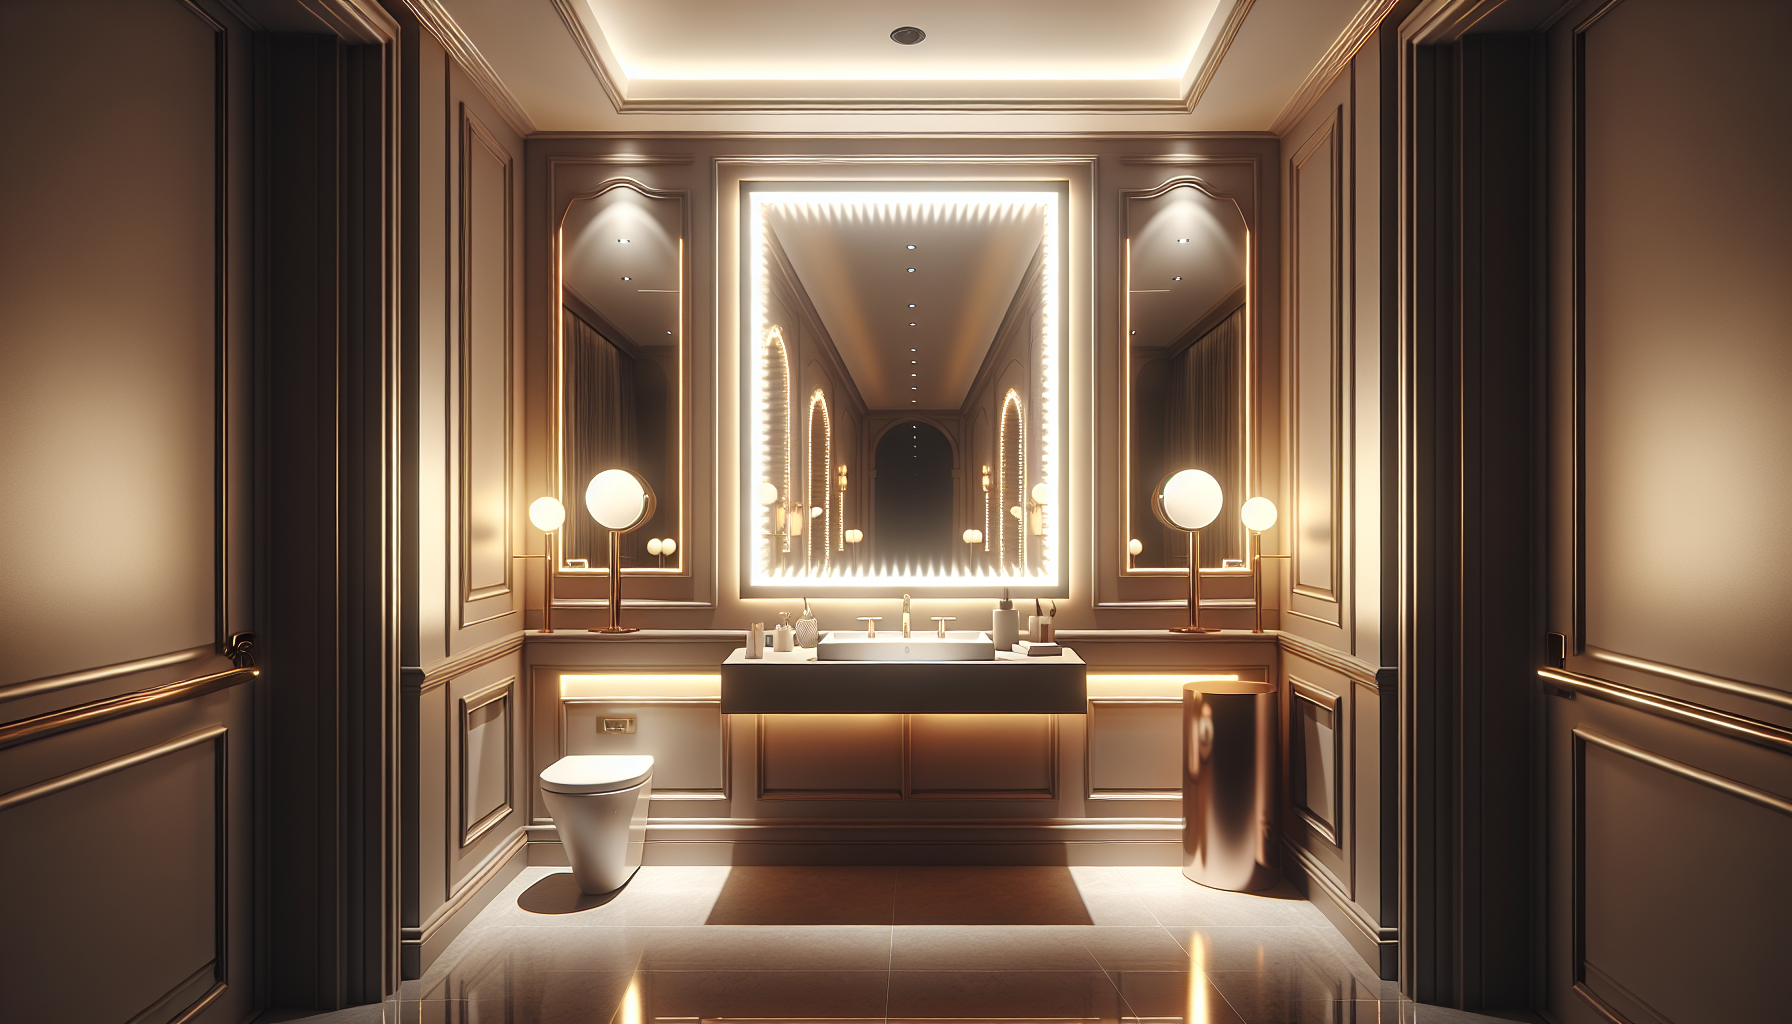 Lichtkonzepte. Ein gut beleuchtetes Gäste-WC mit blendfreier Beleuchtung und beleuchtetem Kosmetikspiegel für optimale Lichtverhältnisse.